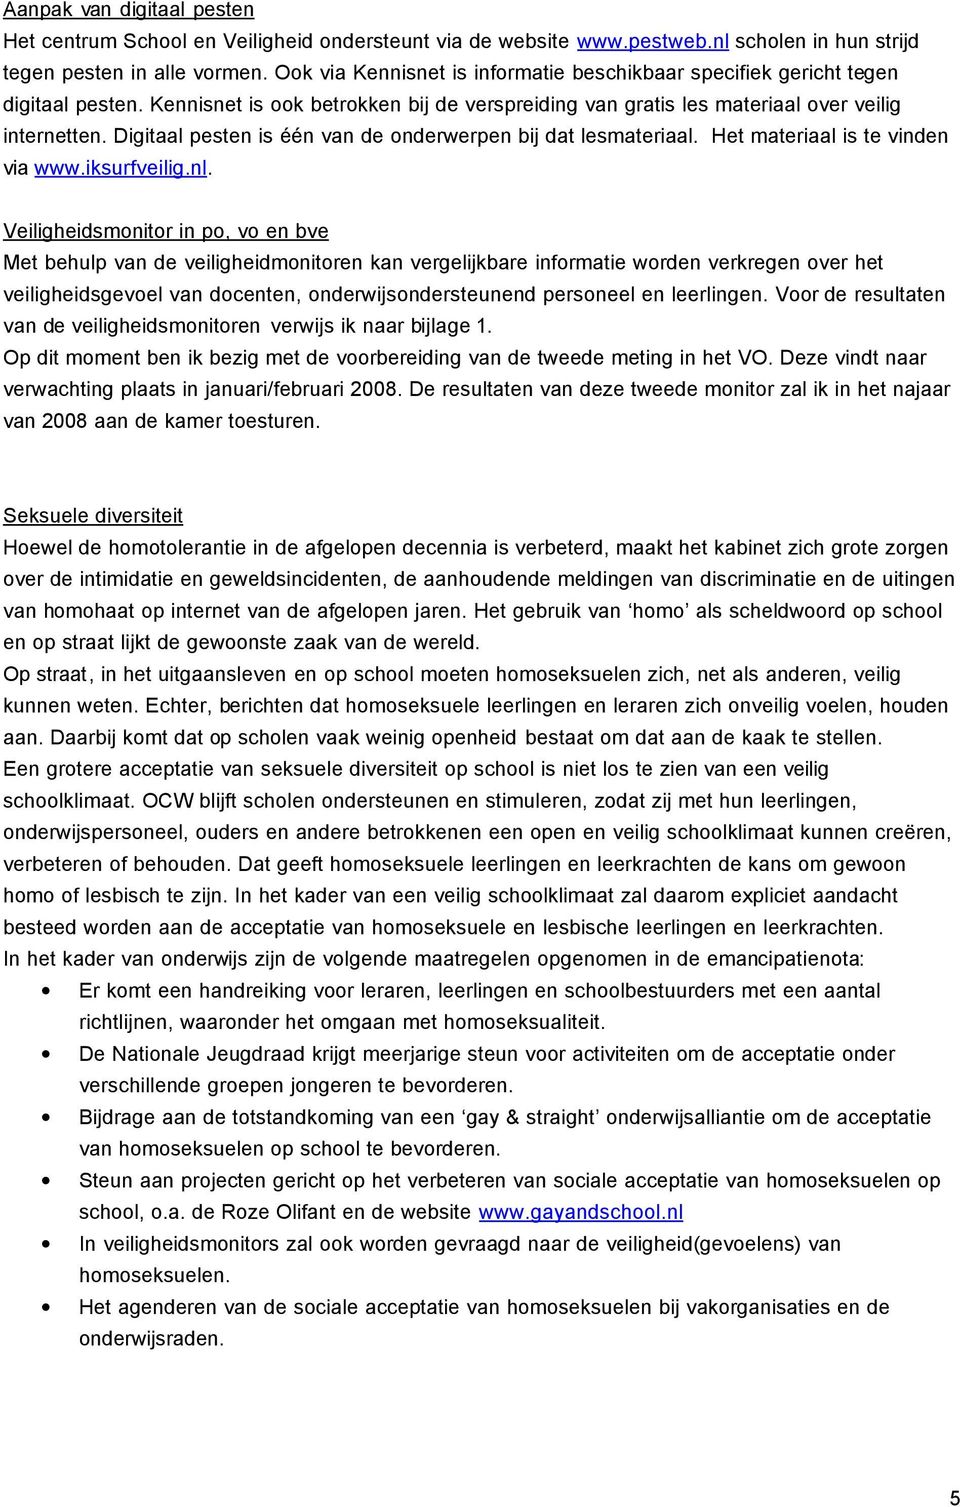 Digitaal pesten is één van de onderwerpen bij dat lesmateriaal. Het materiaal is te vinden via www.iksurfveilig.nl.